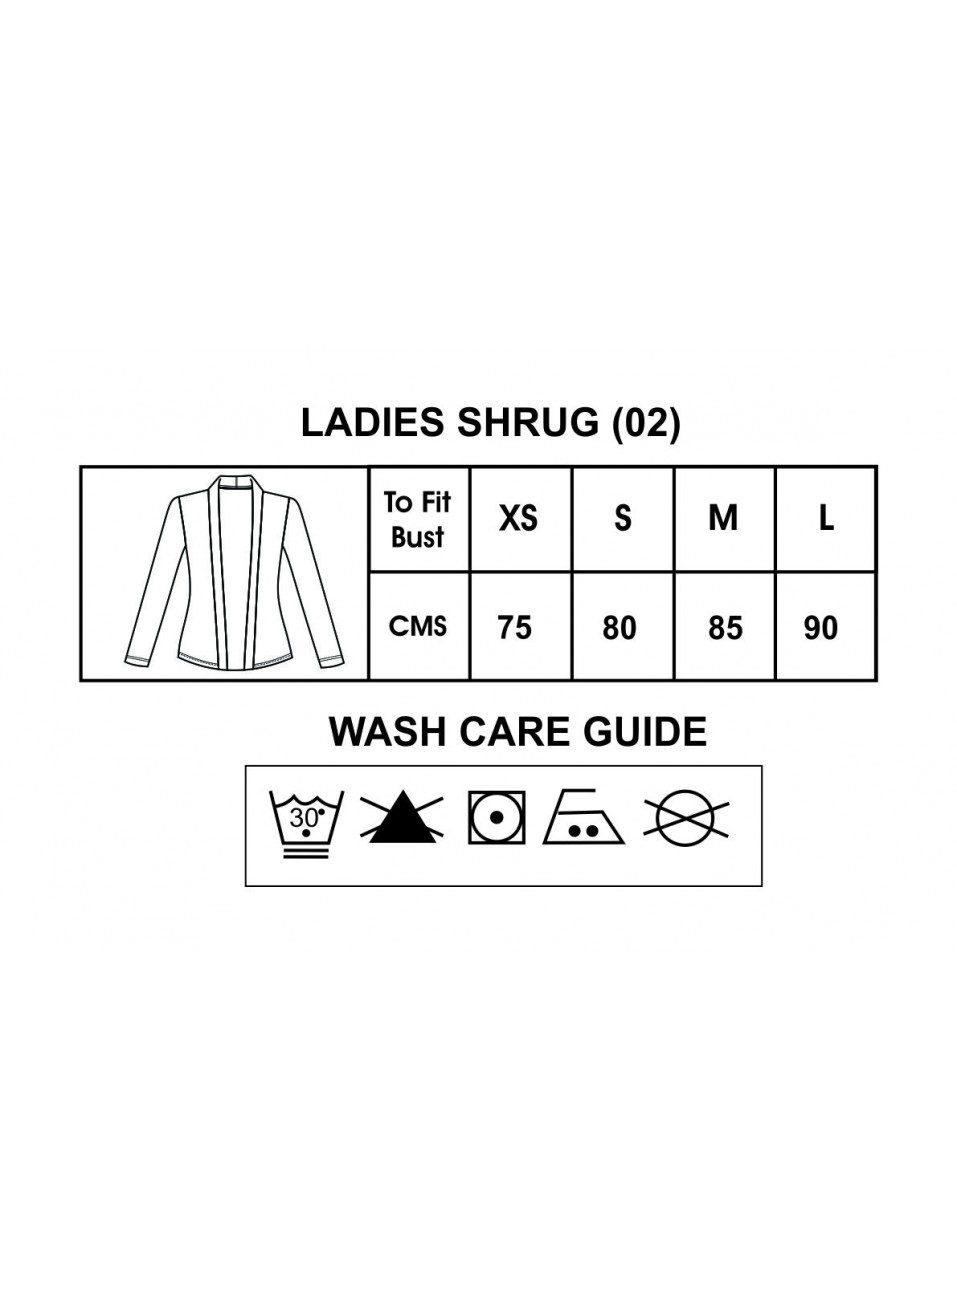 LADIES SHRUG (02)-1 Pcs Pack